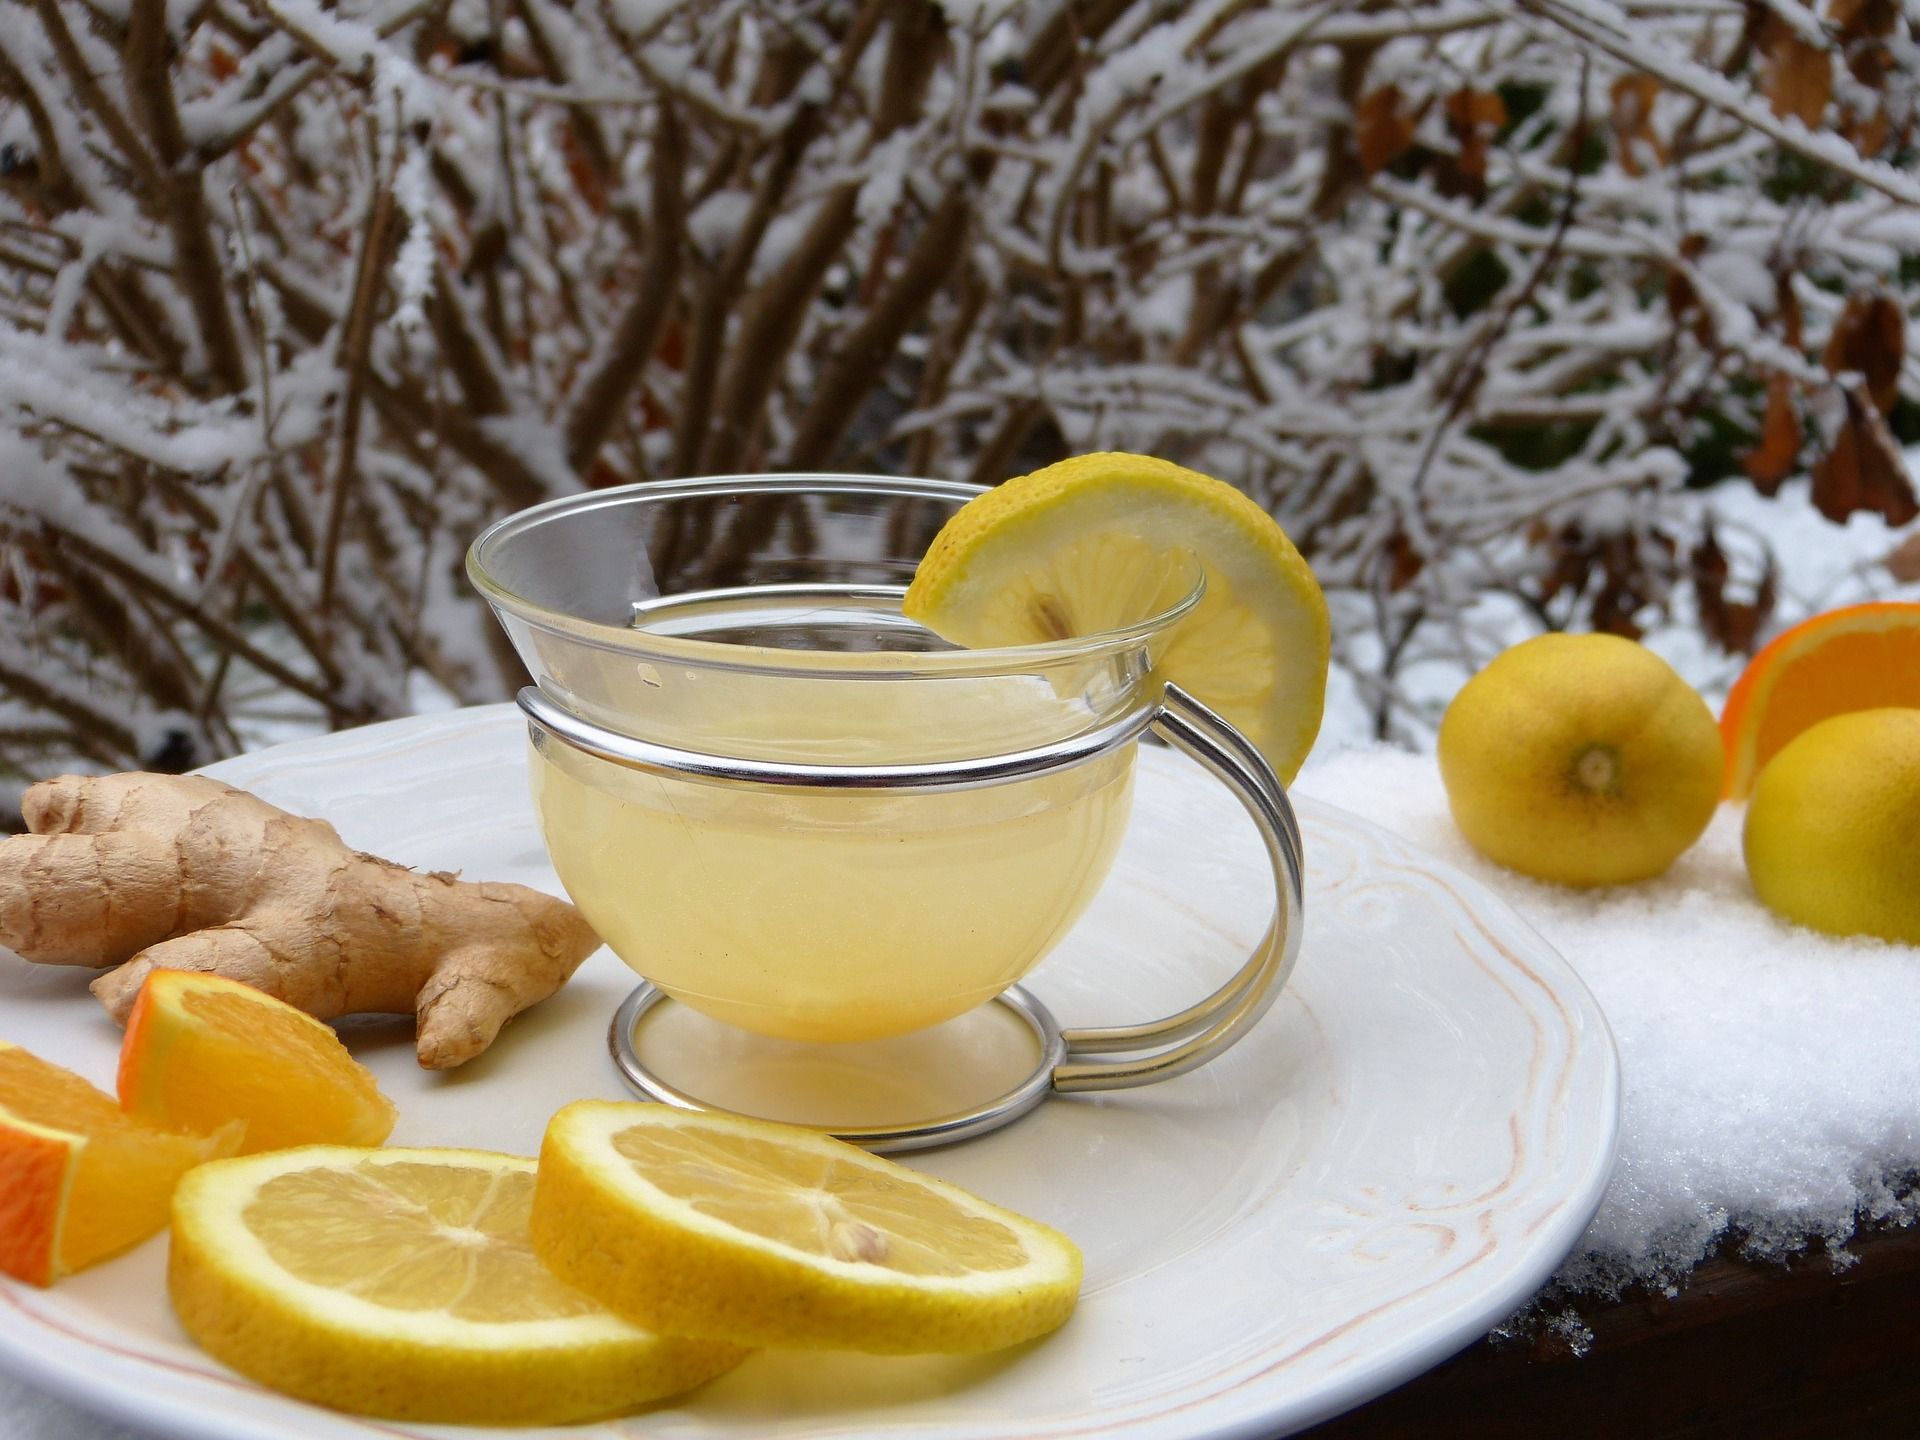 Lemon and ginger tea